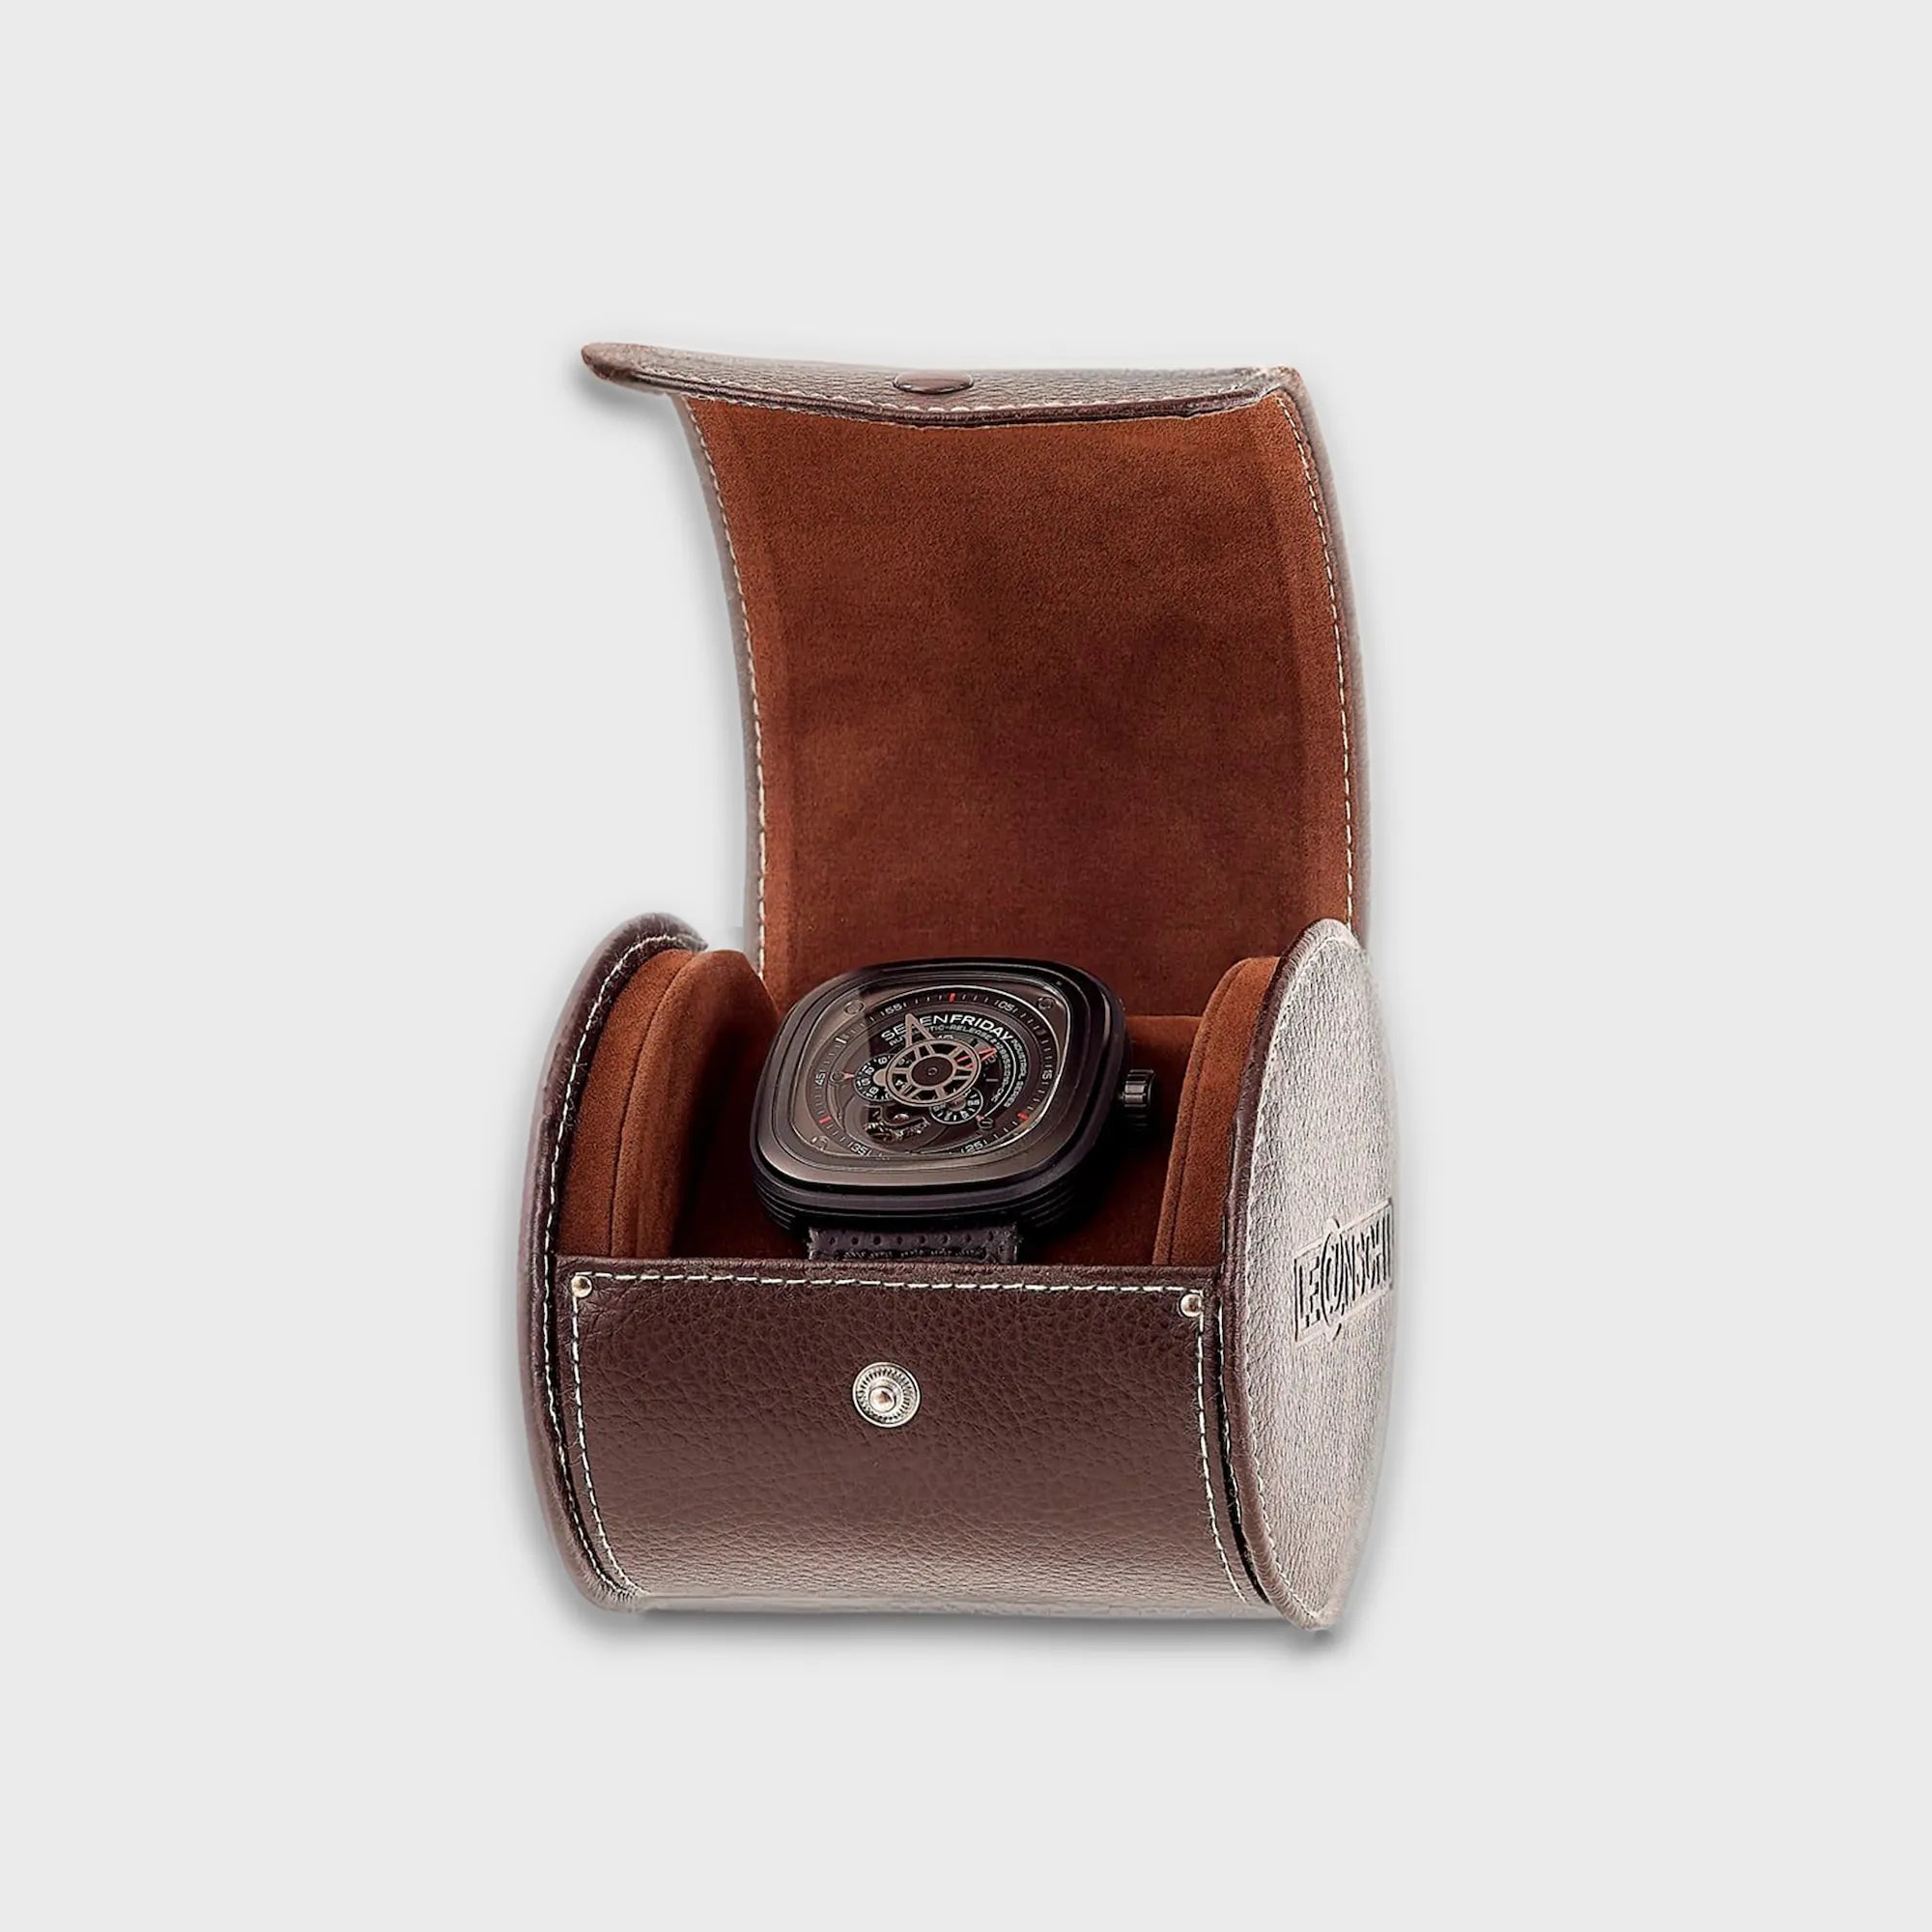 Schokobraunes Uhrenetui für eine Uhr von Leanschi, mit geöffnetem Deckel und einer Uhr im Inneren